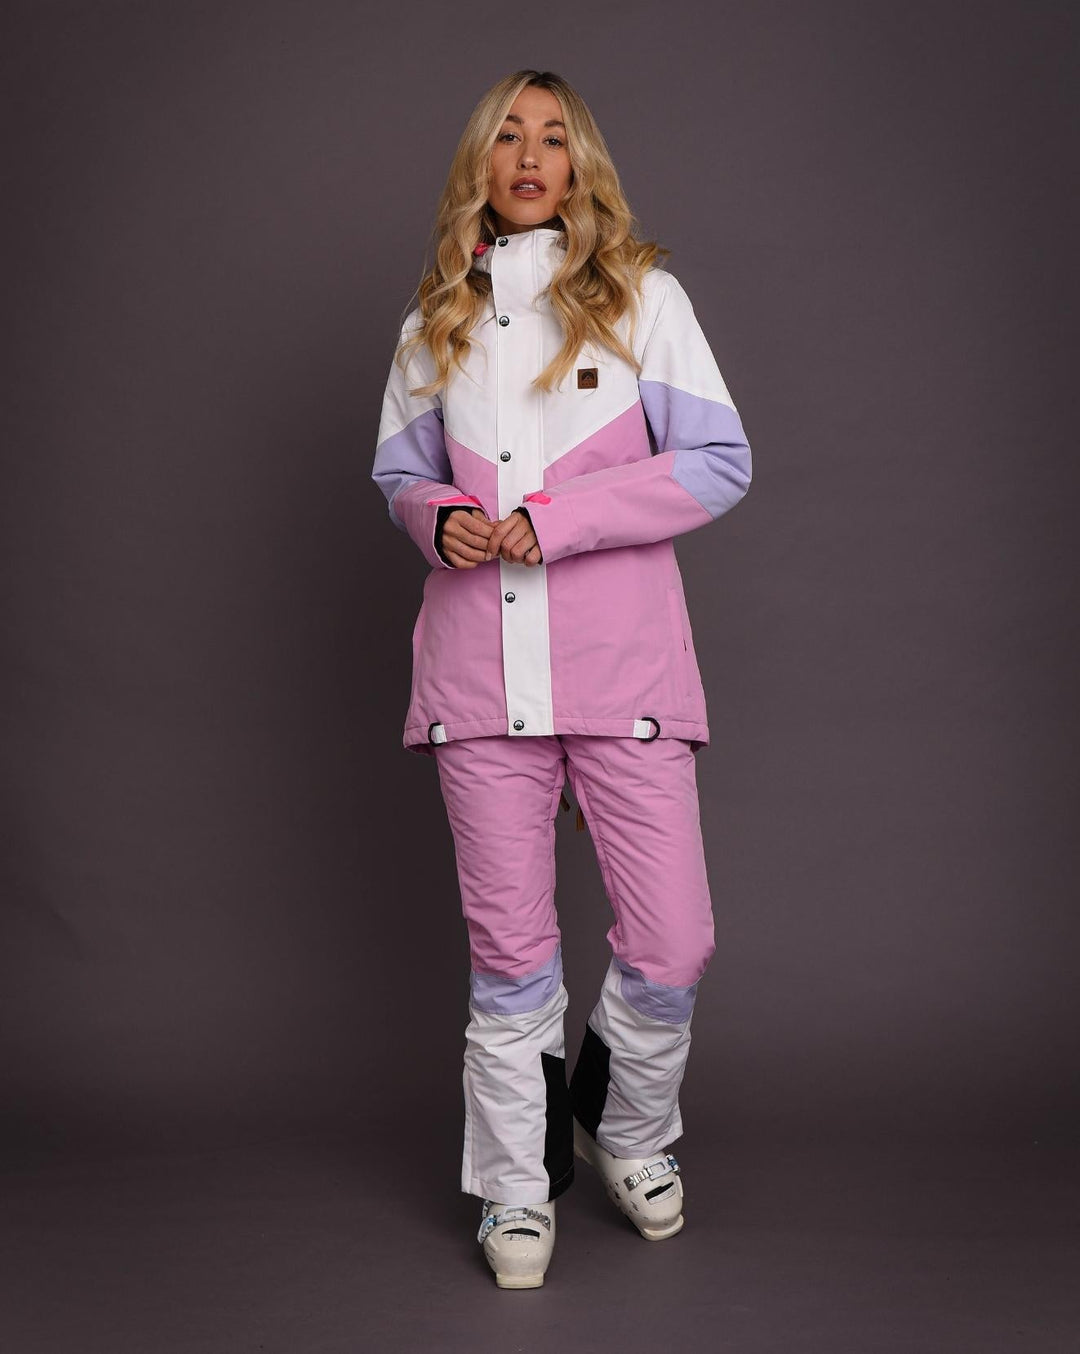 1080 Women's Ski & Snowboard Jacket - Pastel Pink, White & Pastel